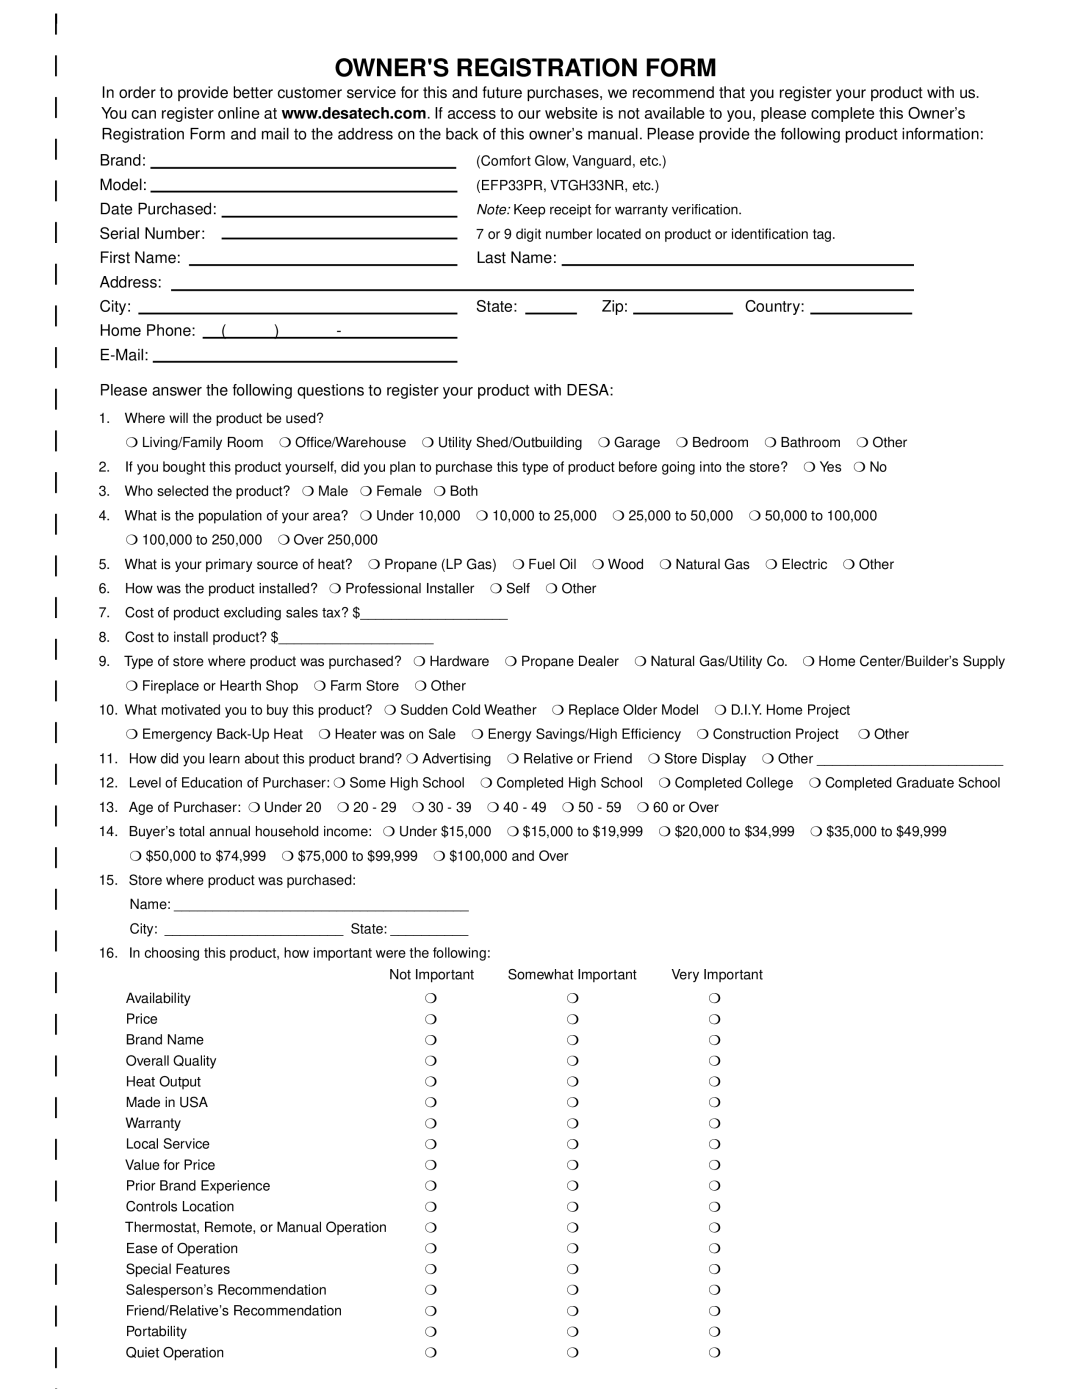 Desa VDDVF36STN/STP, VDDVF36PN/PP installation manual Owners Registration Form 